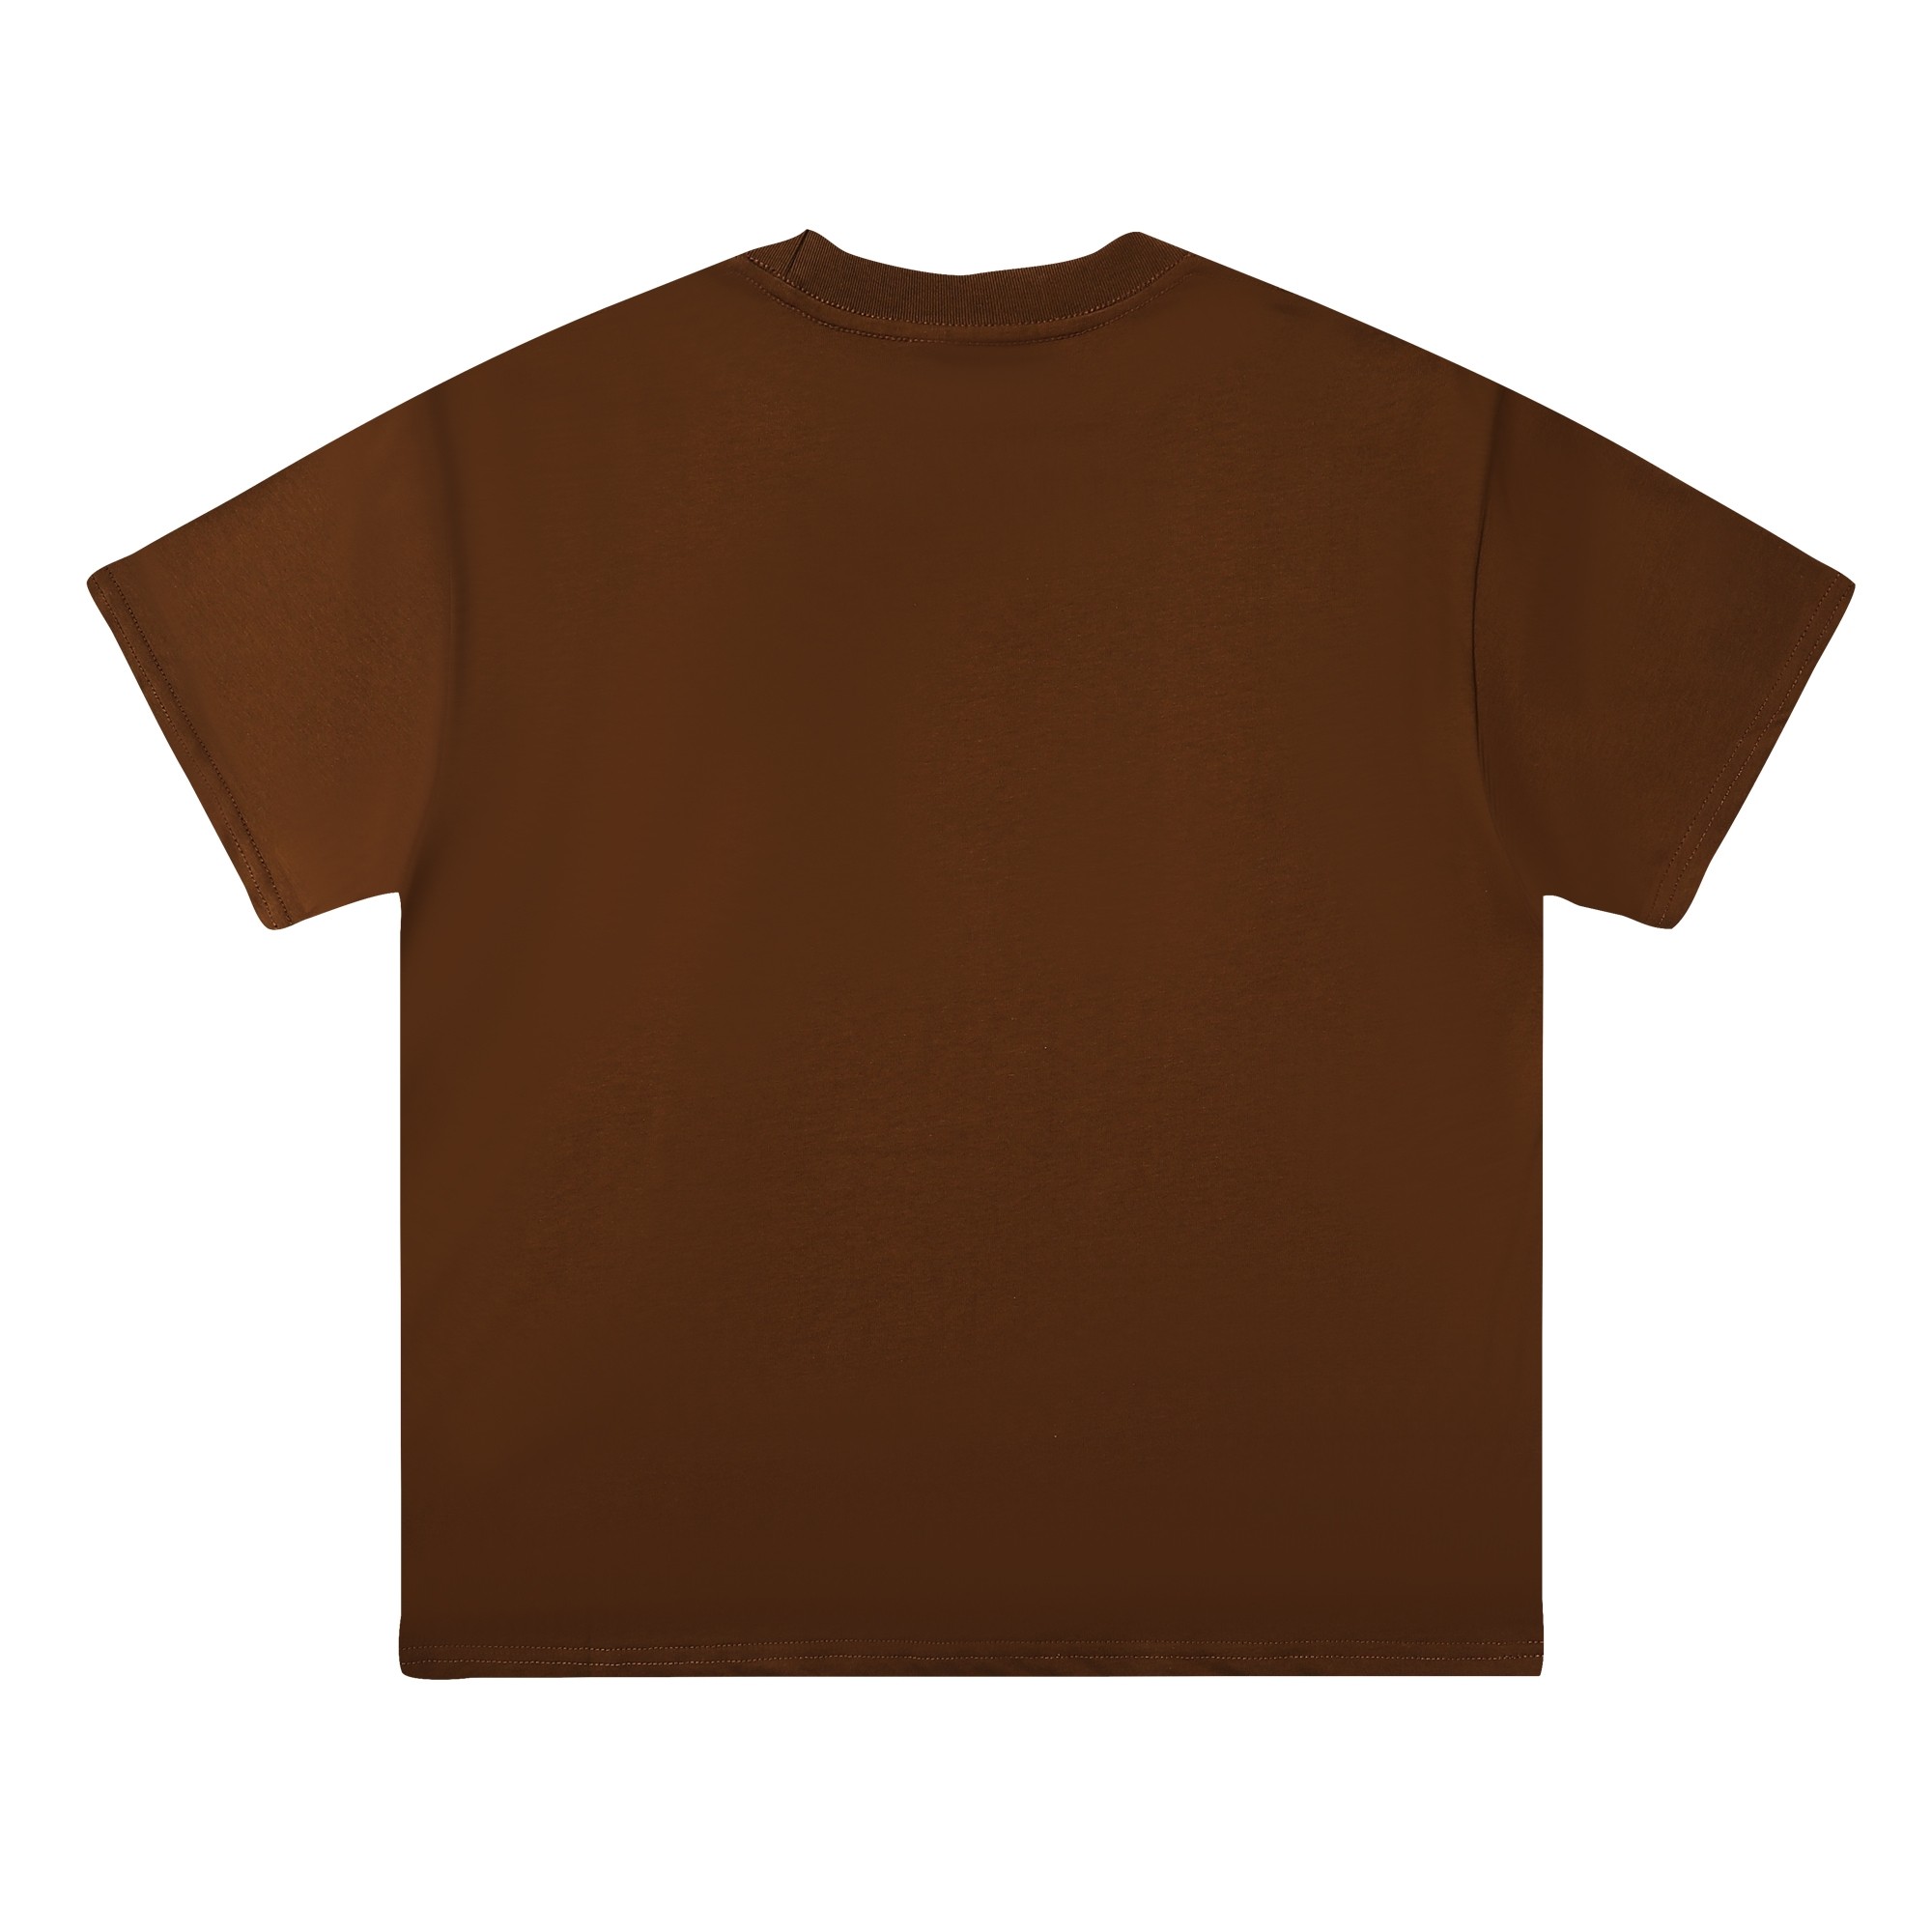 激安大特価最新作の ステューシー tシャツ タグスーパーコピー トップス 純綿 半袖 プリント ファッション 3色可選_7